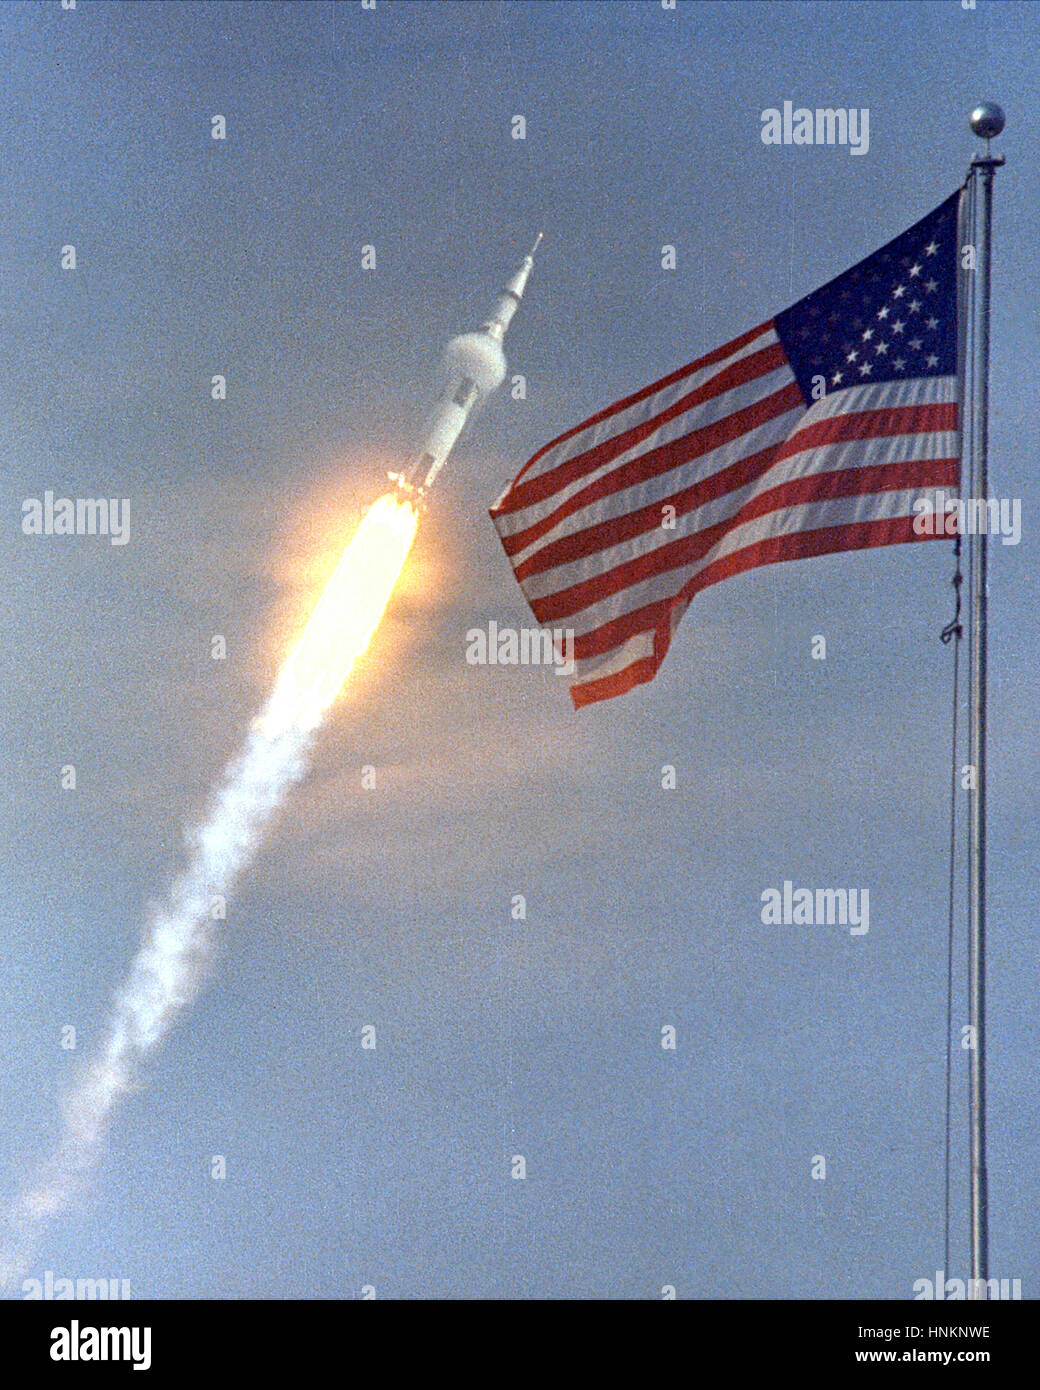 Die amerikanische Flagge läutete den Start von Apollo 11, die erste Mondlandung Mission, am 16. Juli 1969. Die massiven Saturn V-Rakete abgehoben von der NASA Kennedy Space Center mit Astronauten Neil A. Armstrong, Michael Collins und Edwin "Buzz" Aldrin um 9:32 Uhr EDT. Vier Tage später landete am 20. Juli, Armstrong und Aldrin auf der Oberfläche des Mondes während Collins über Kopf in die Kommandokapsel umkreist. Armstrong und Aldrin gesammelten Materialproben lunar und wissenschaftliche Experimente, die Datenübertragung über die lunar Umwelt bereitgestellt.  Bild-Gutschrift: NASA Stockfoto